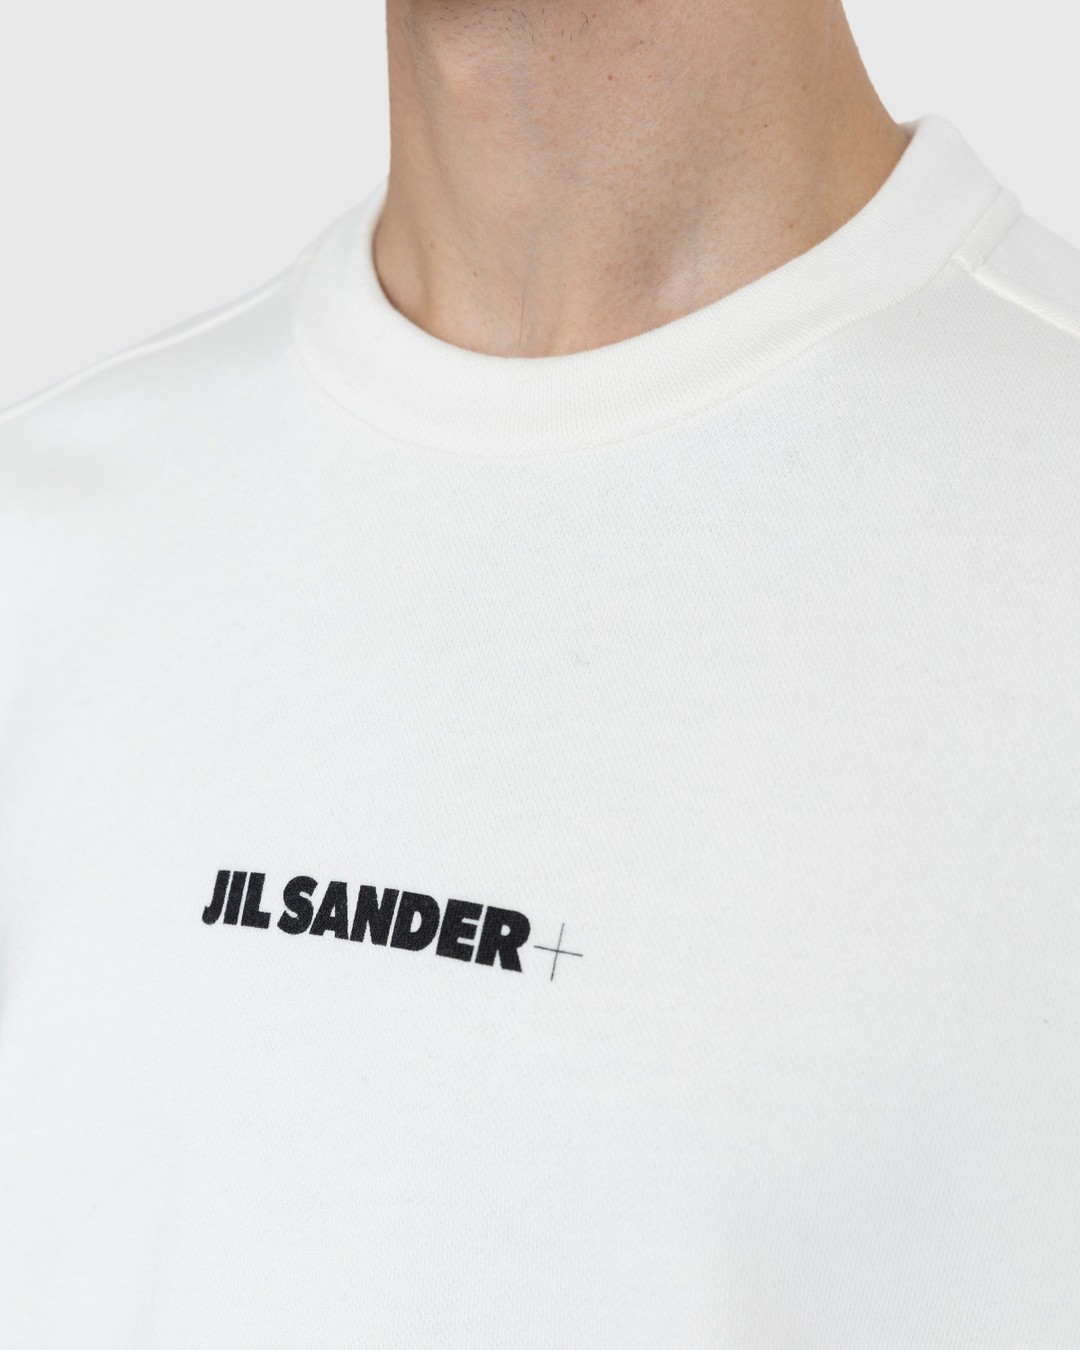 Jil Sander – Logo Sweatshirt Beige - Sweats - Beige - Image 5